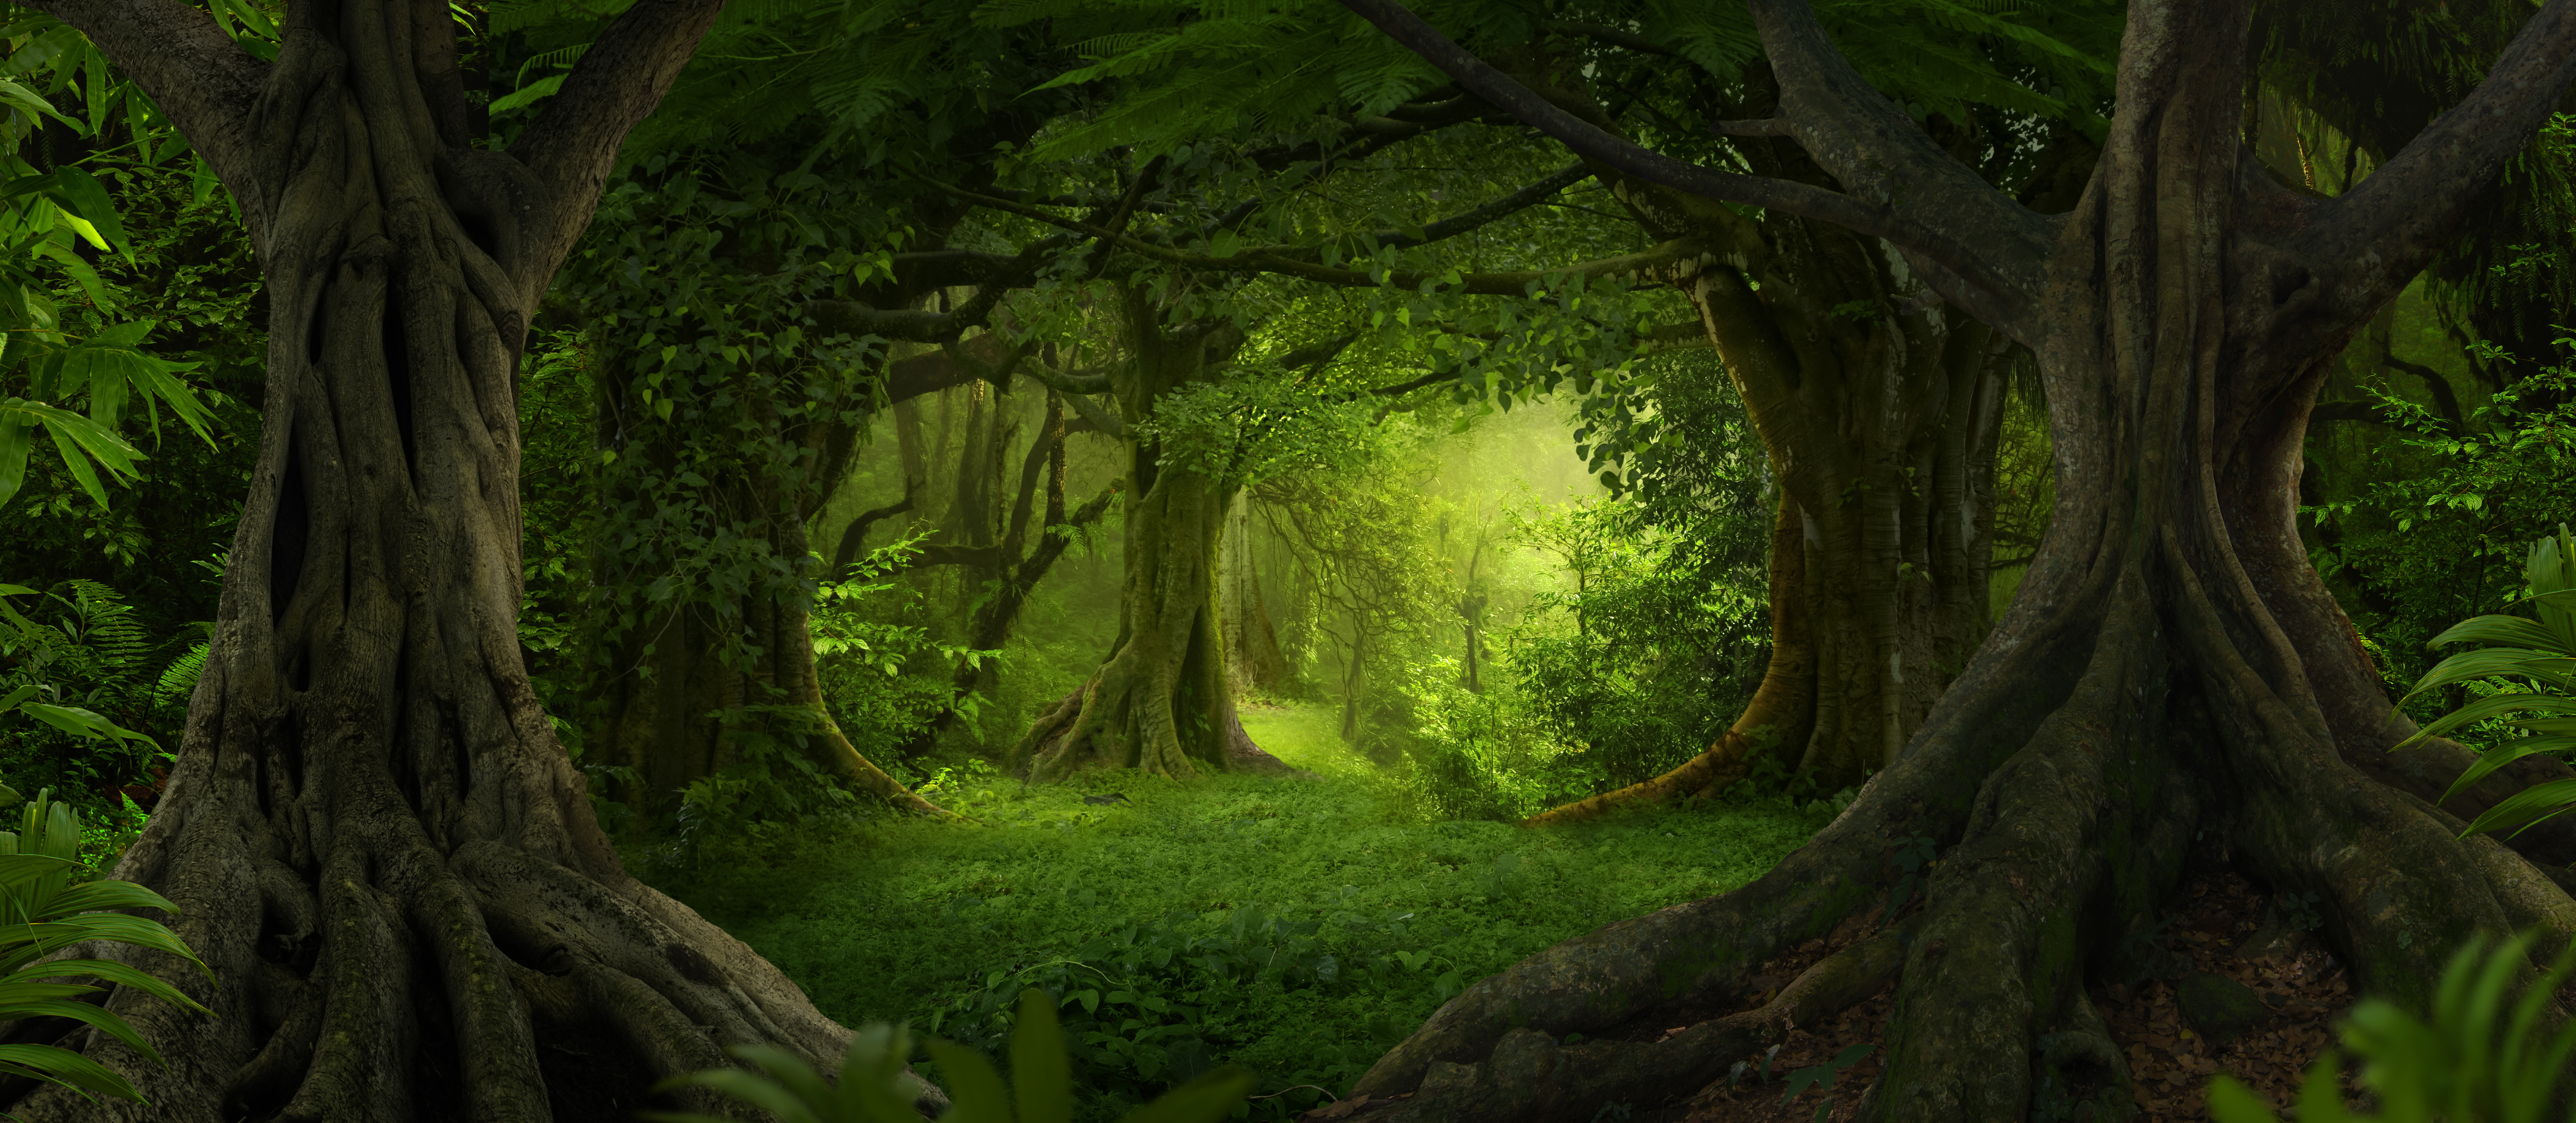 Le moteur de recherche Ecosia aurait permis de planter plus de 82 millions d'arbres. © Quickshooting, Adobe Stock